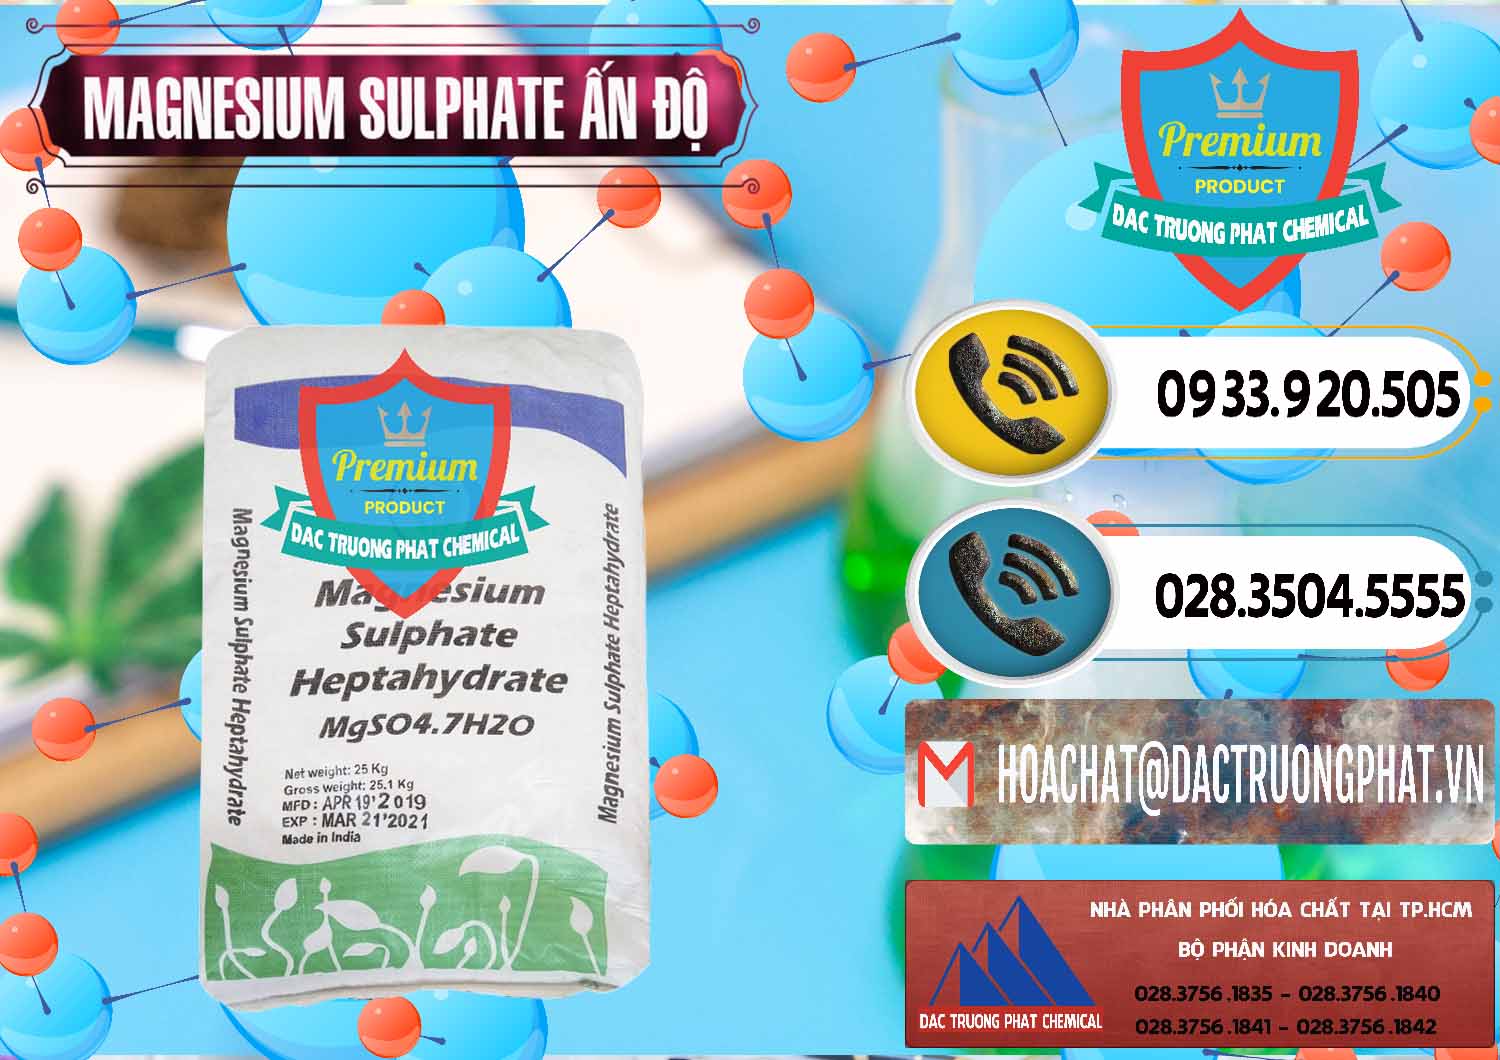 Chuyên cung cấp và bán MGSO4.7H2O – Magnesium Sulphate Heptahydrate Ấn Độ India - 0362 - Phân phối và cung cấp hóa chất tại TP.HCM - hoachatdetnhuom.vn